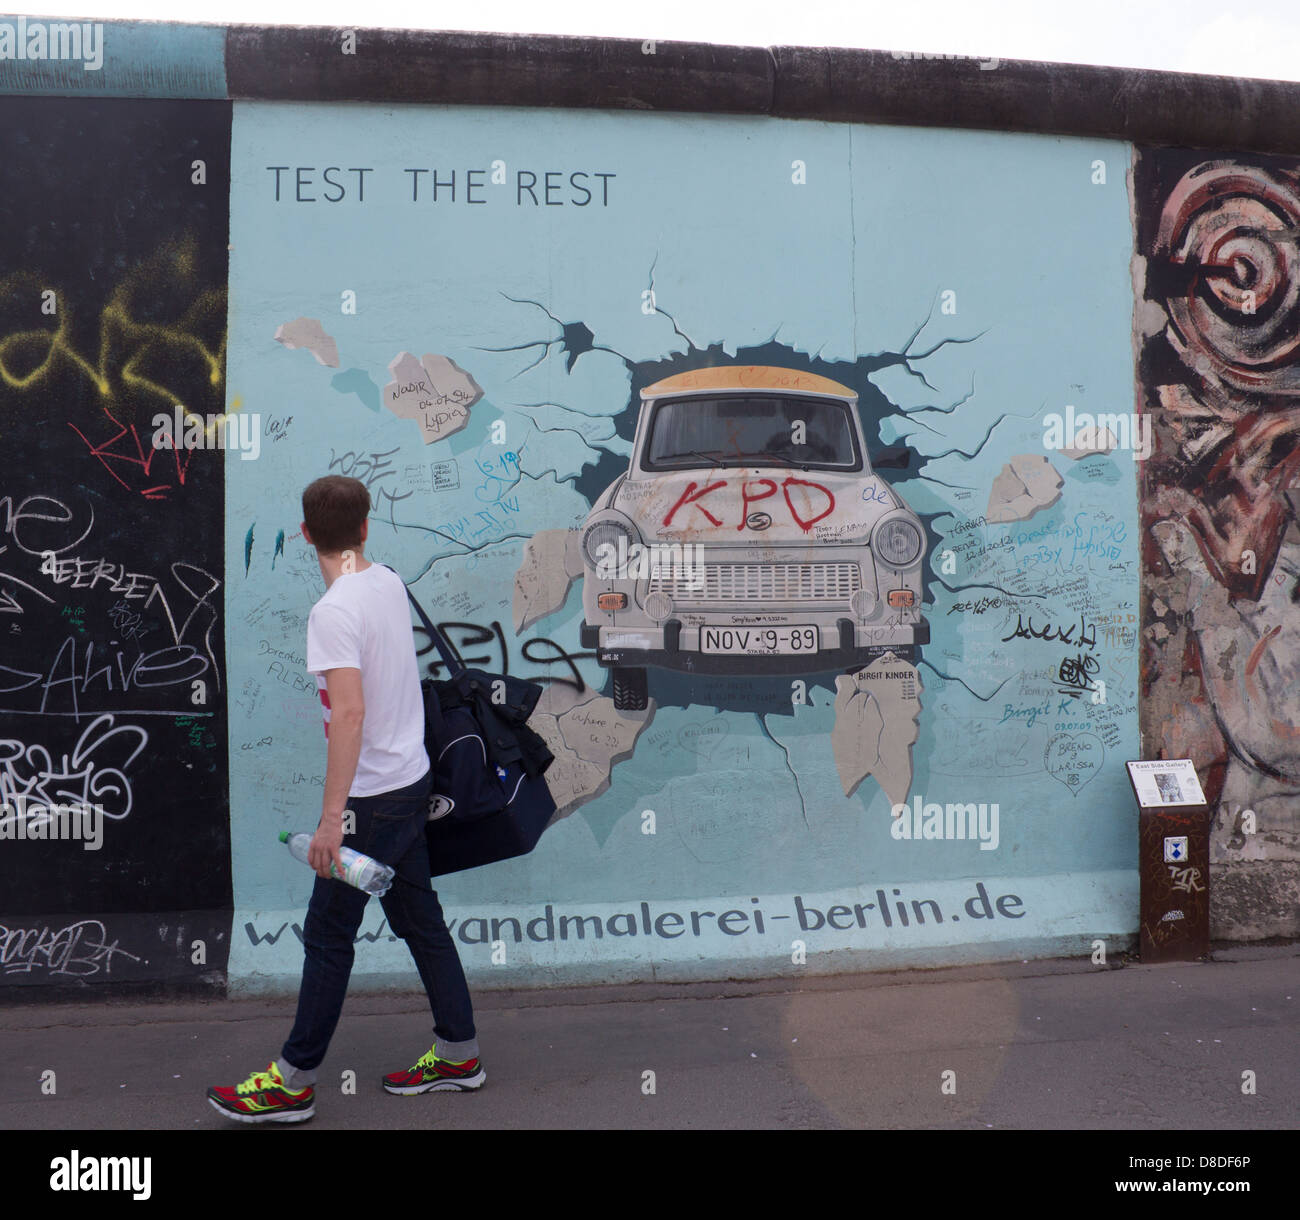 Mur de Berlin East Side Gallery peinture de voiture Trabant briser mur avec man walking passé, retour à Berlin Allemagne Banque D'Images